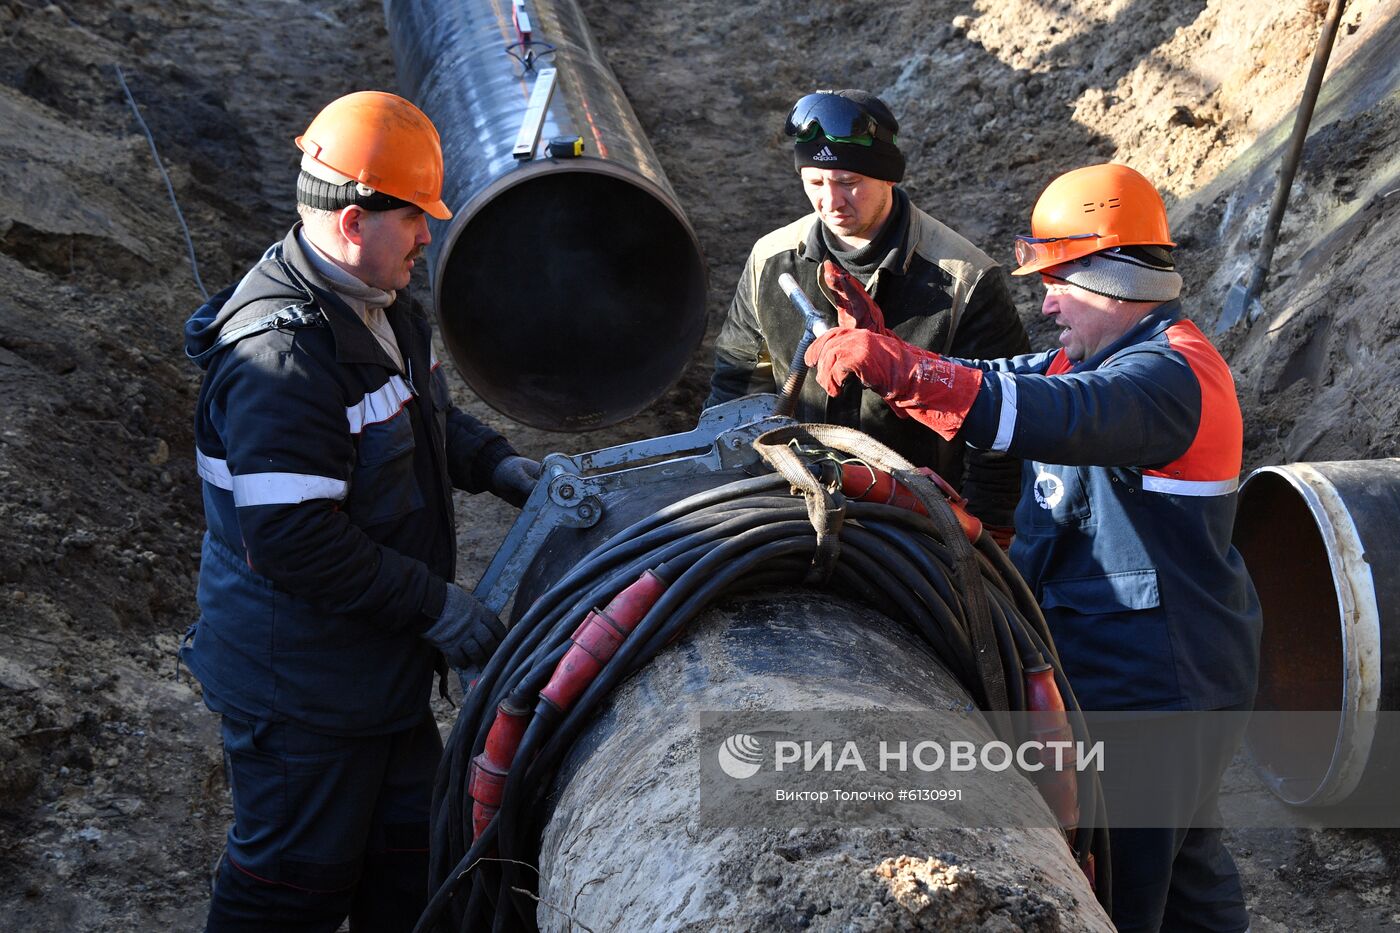 Нефтепровод "Дружба" в Гомельской области